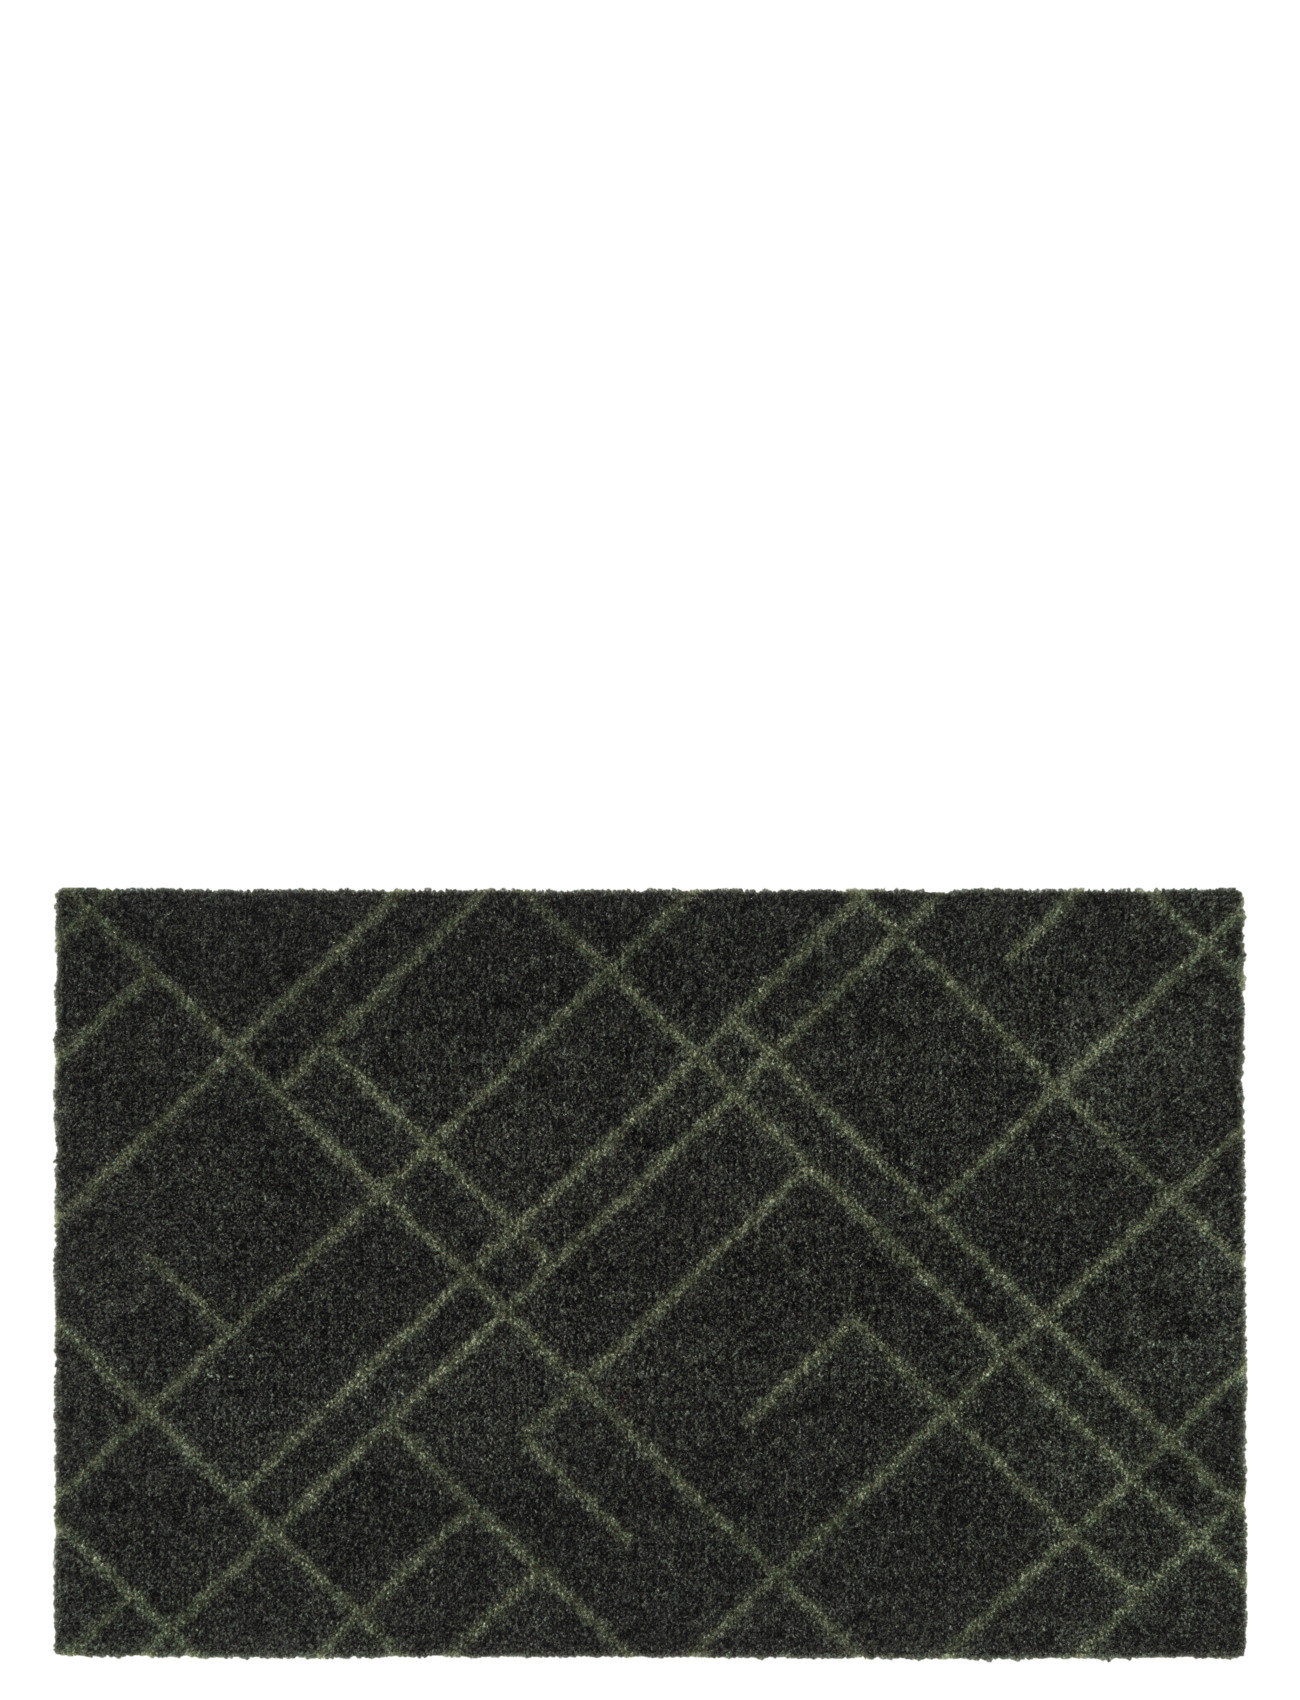 Floormat Polyamide, 60X40 Cm, Lines Design Home Textiles Rugs & Carpets Door Mats Green Tica Copenhagen